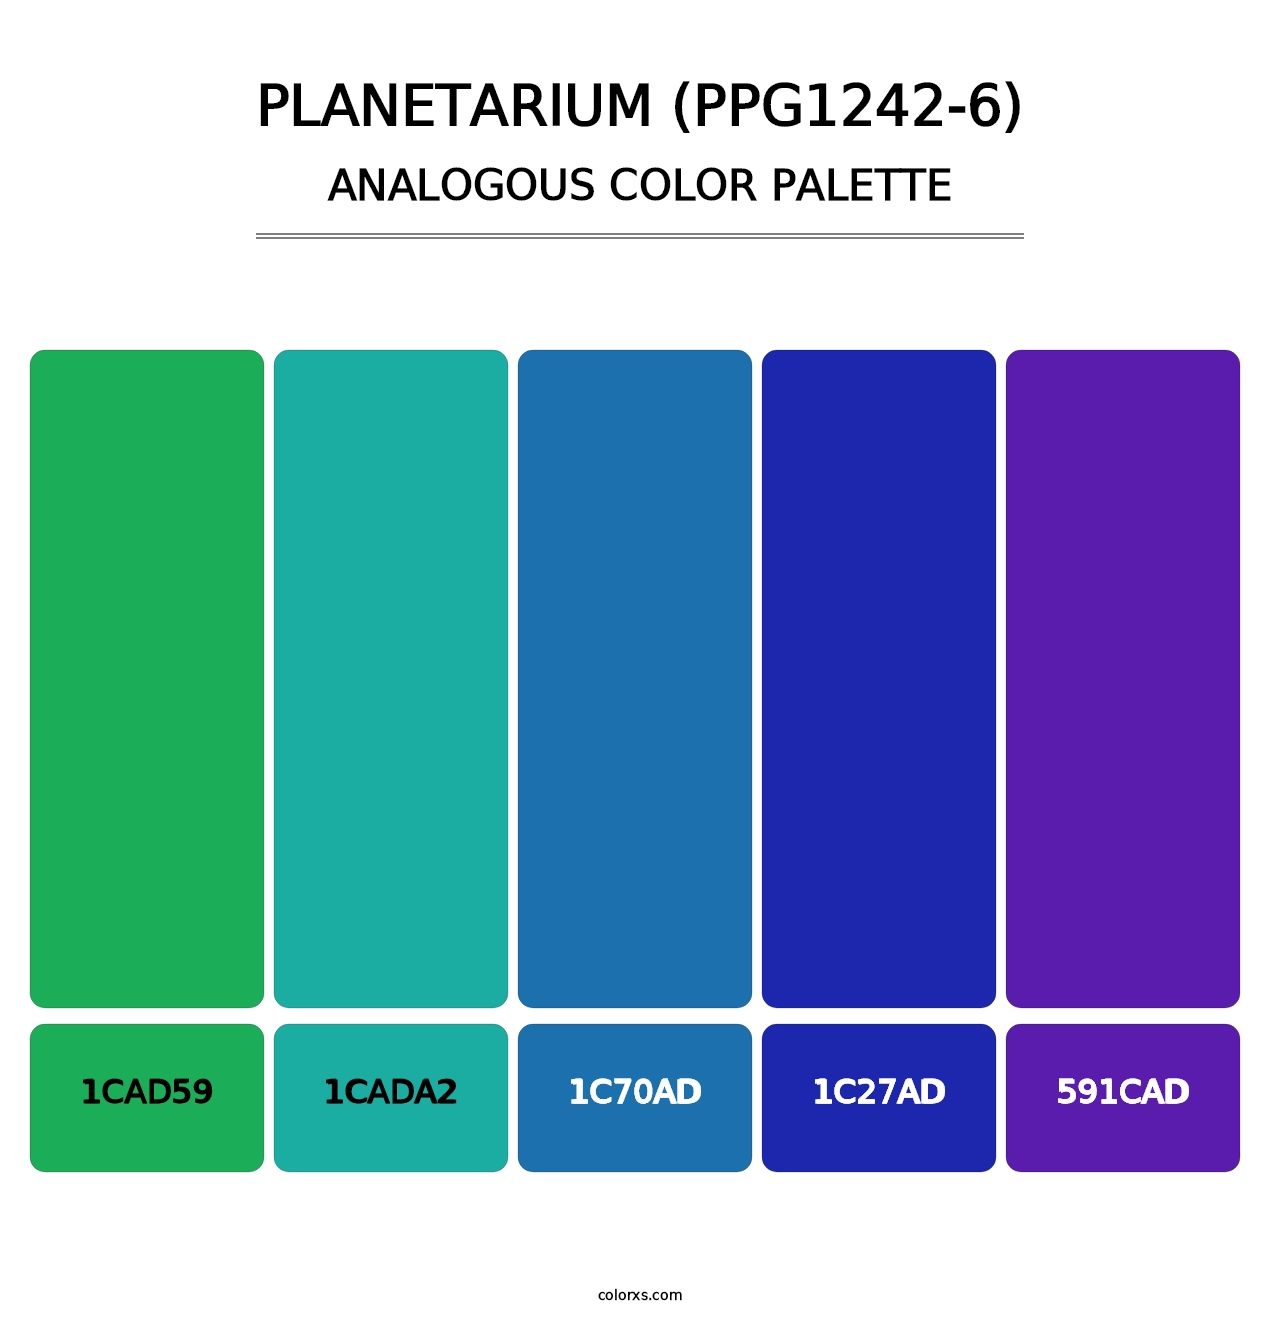 Planetarium (PPG1242-6) - Analogous Color Palette